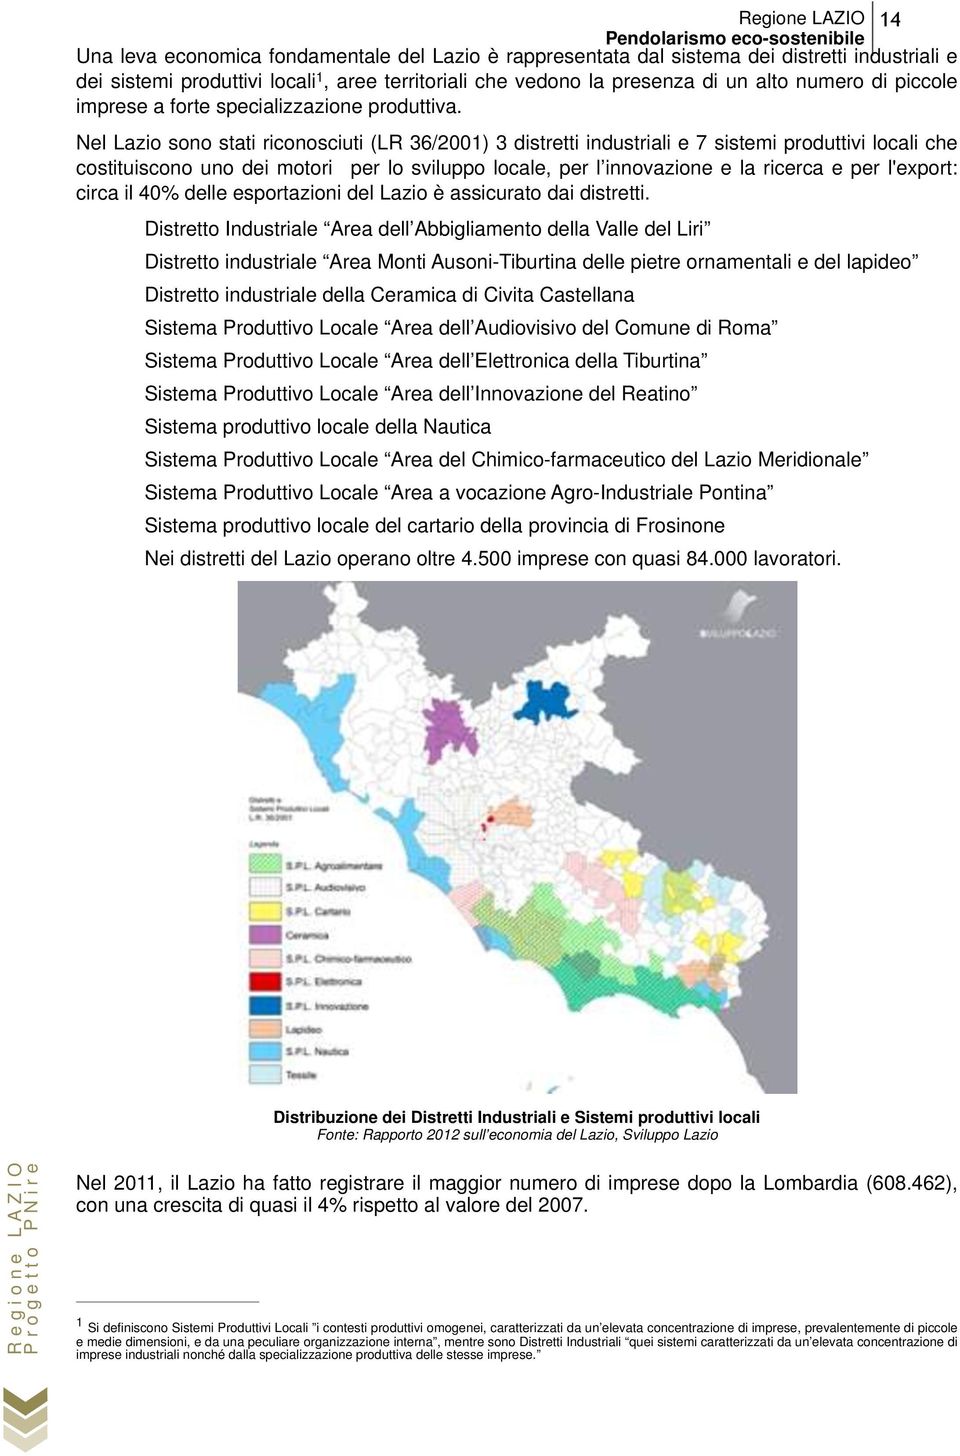 Nel Lazio sono stati riconosciuti (LR 36/2001) 3 distretti industriali e 7 sistemi produttivi locali che costituiscono uno dei motori per lo sviluppo locale, per l innovazione e la ricerca e per